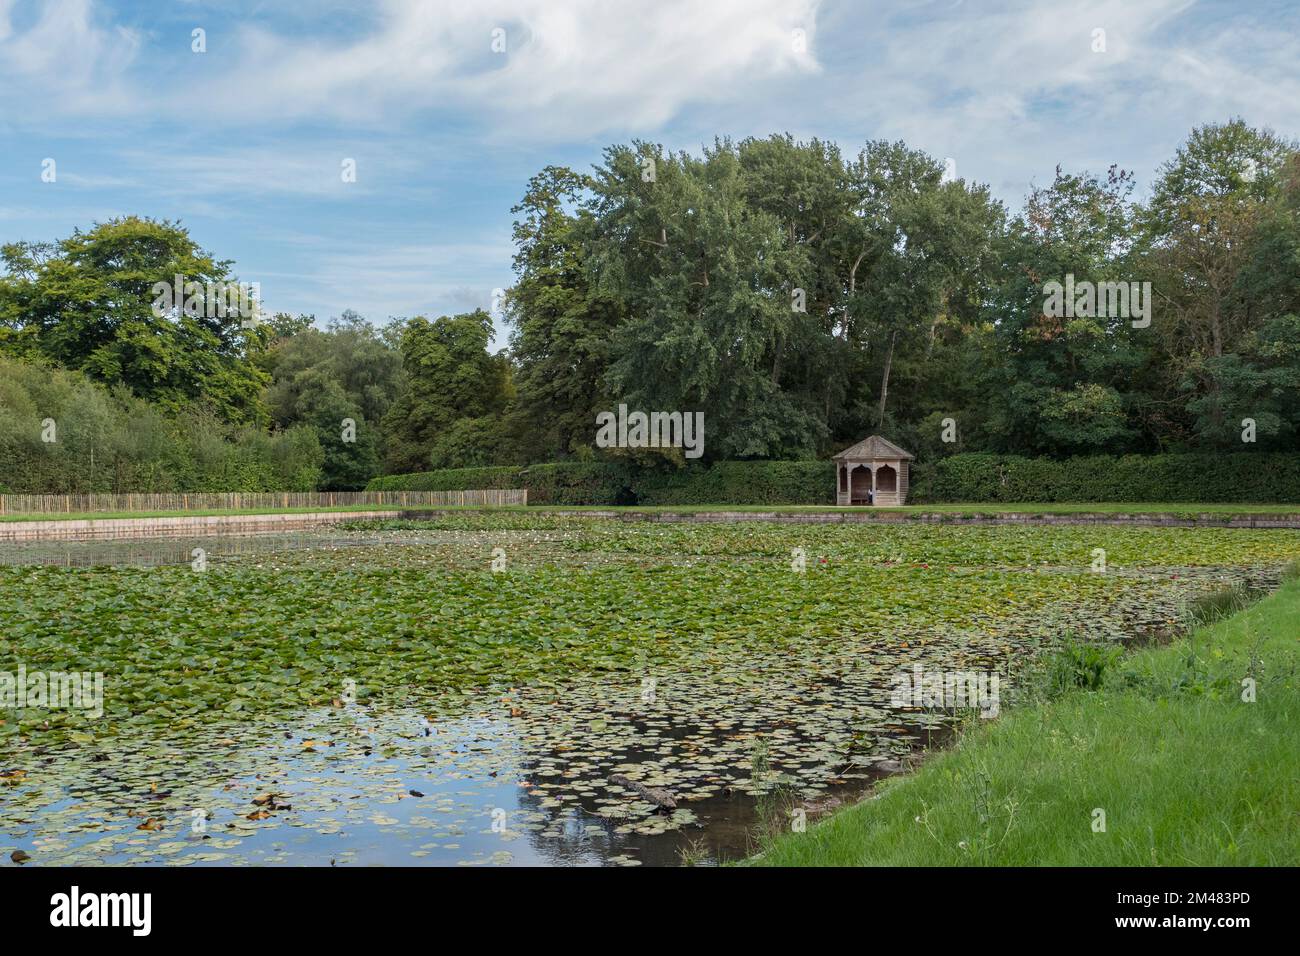 Allgemeiner Blick auf Cow Pond, einen Ziersee, vergoldet mit einer Fülle von Seerosen, Windsor Great Park, Surrey, Großbritannien. Stockfoto